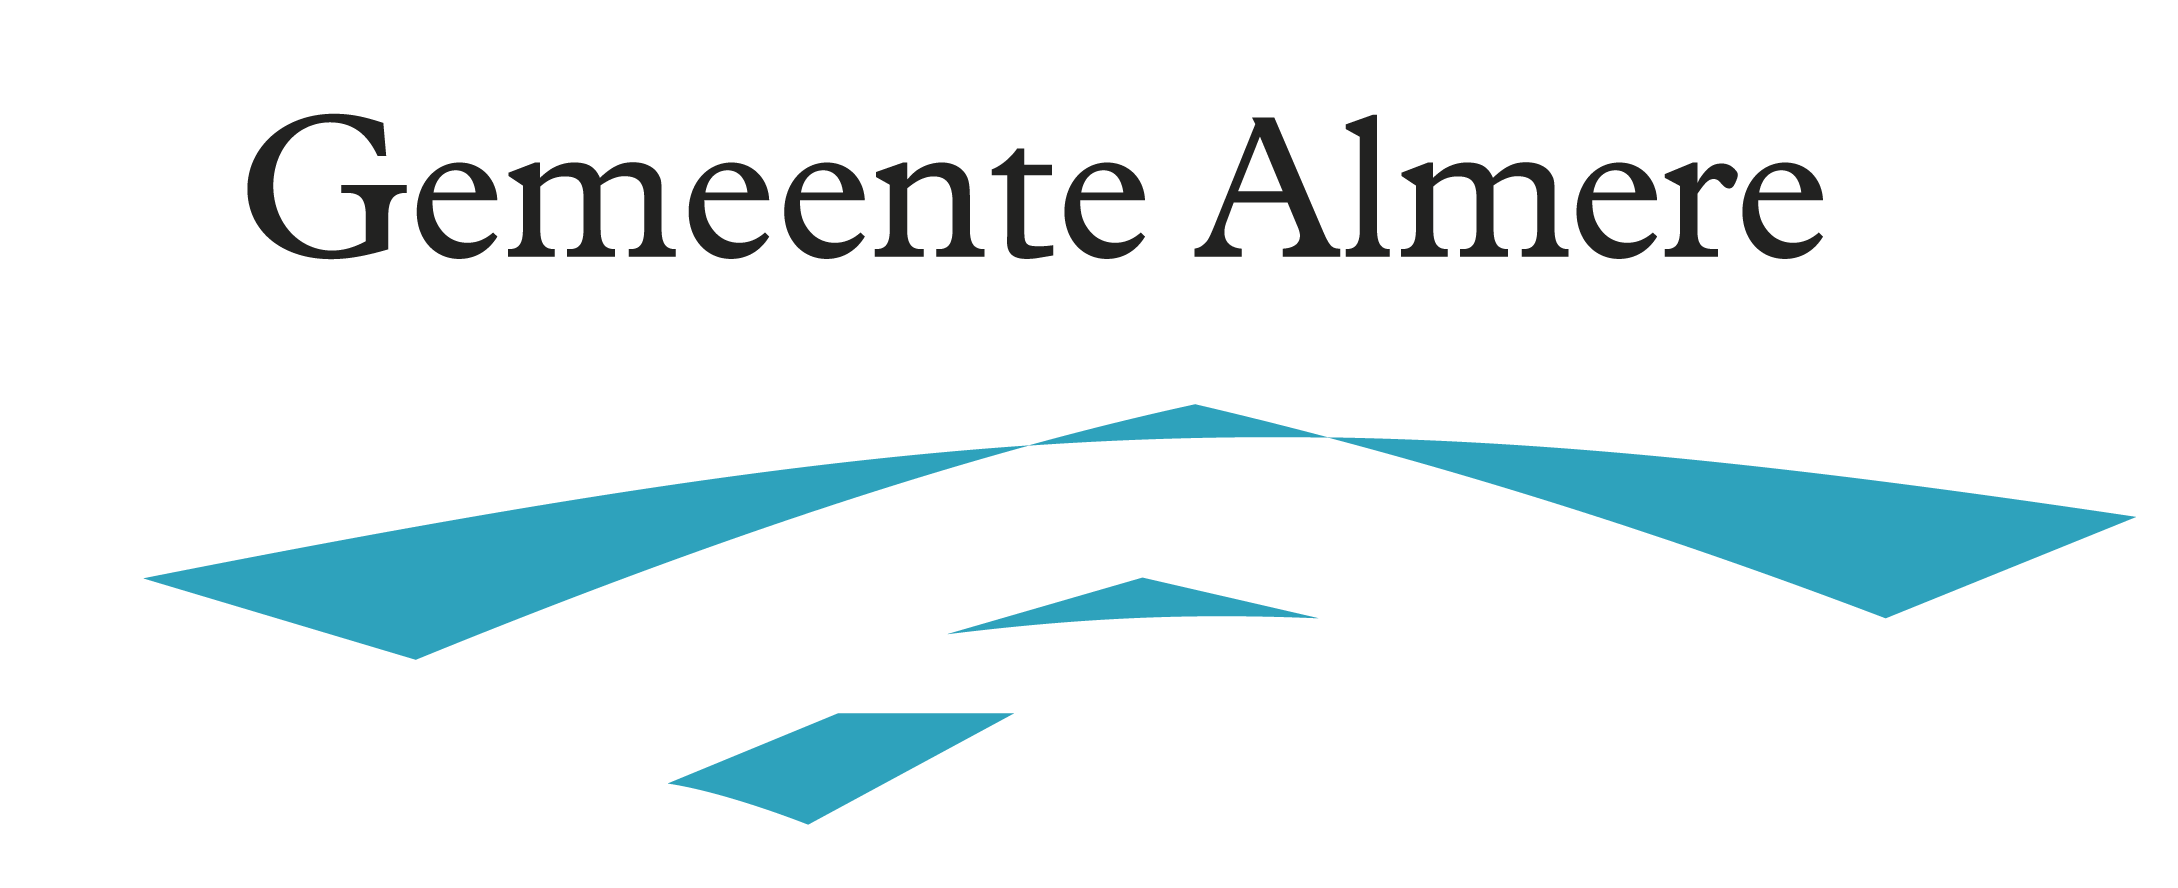 Logo Gemeente Almere